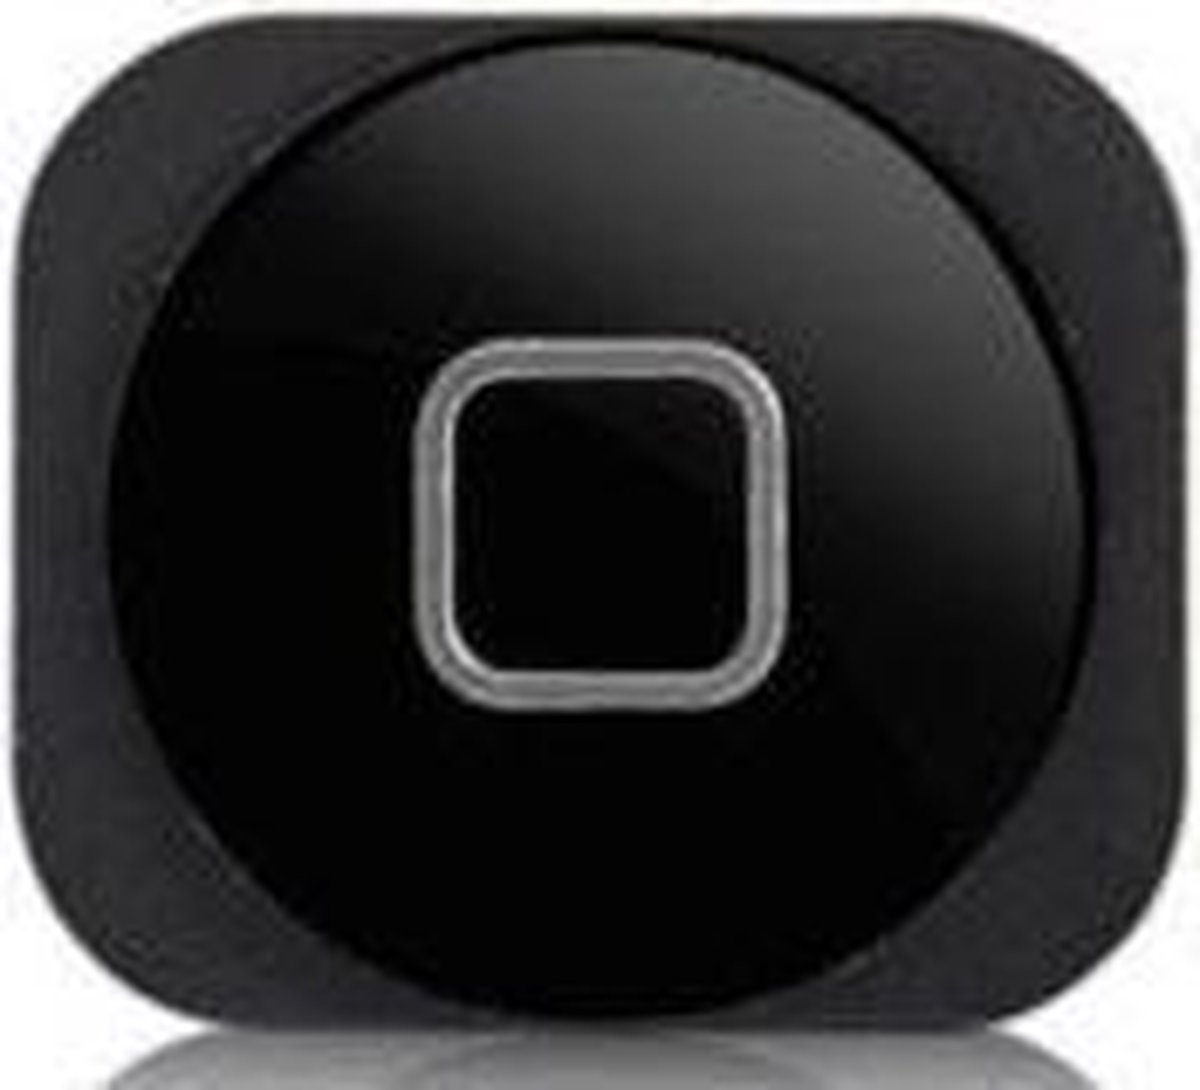 iPhone 5 / 5c home button met gasket - zwart